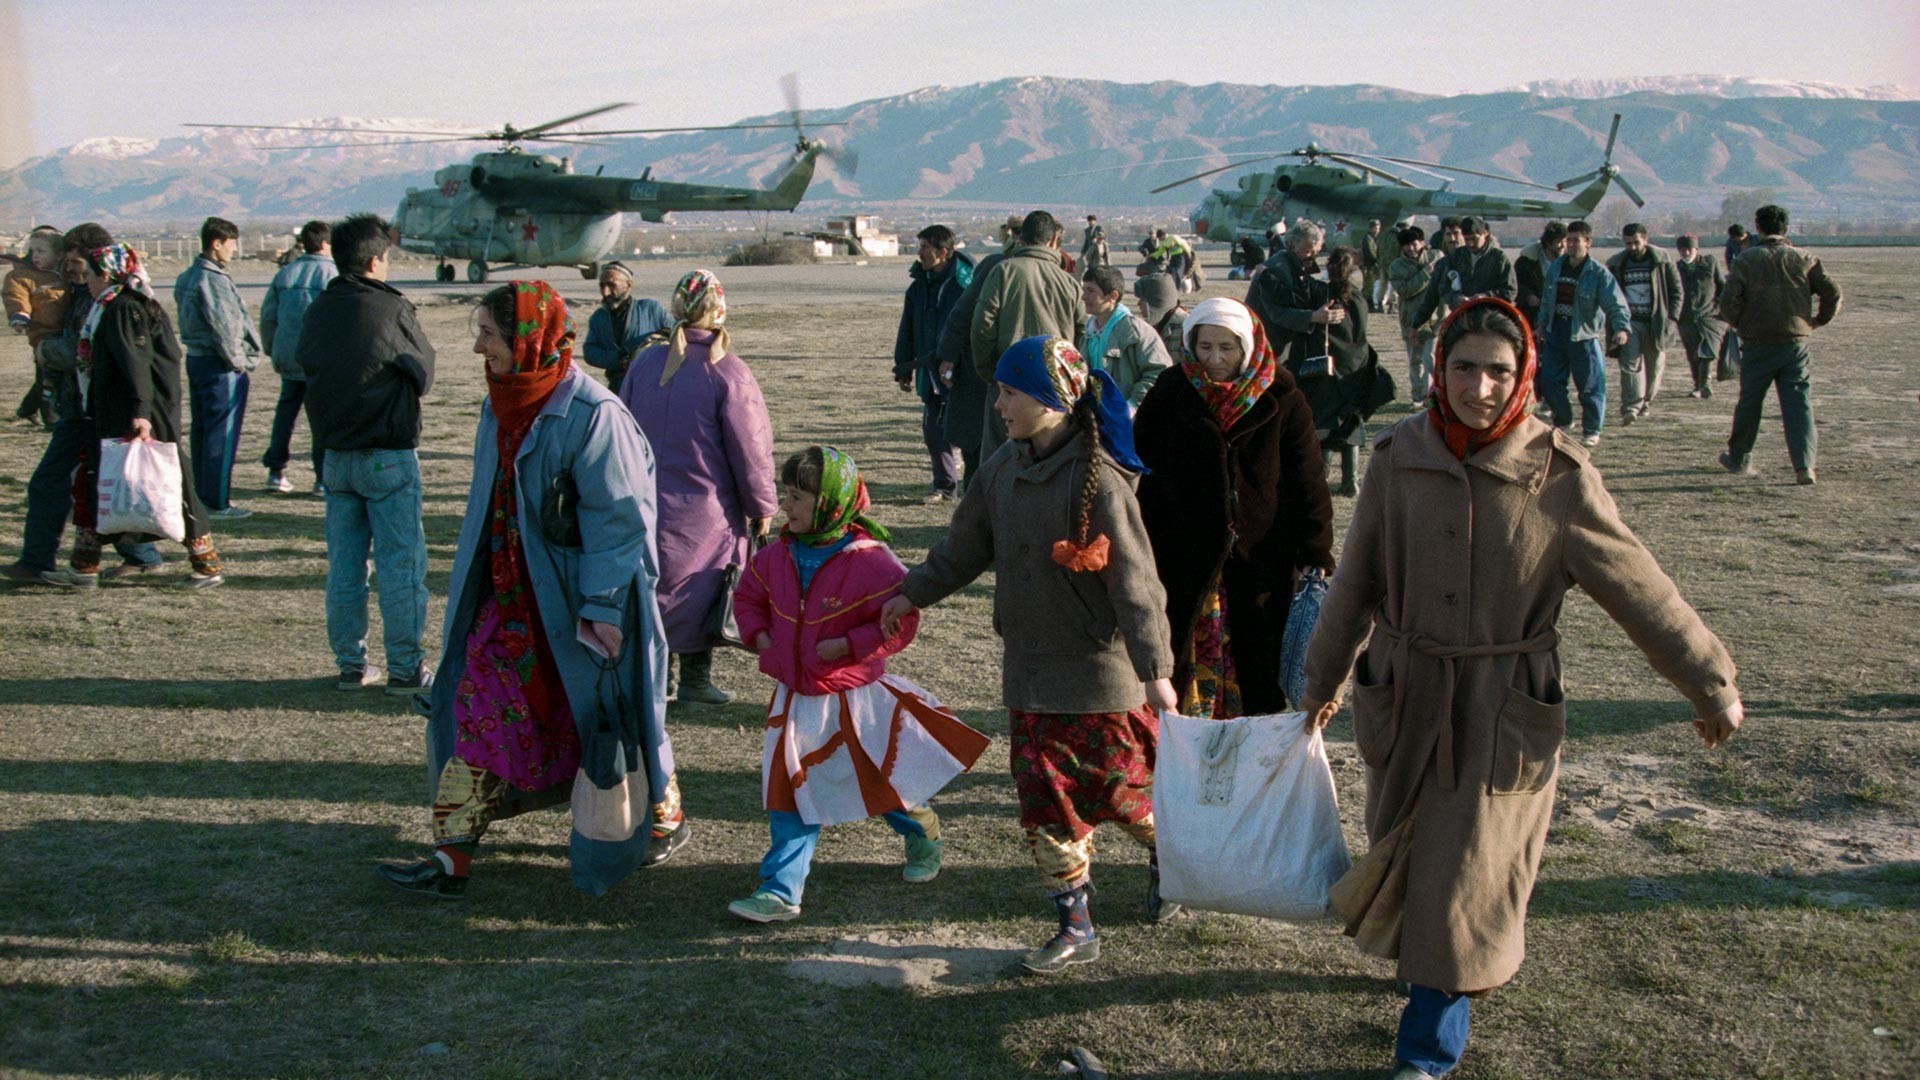 Les forces de maintien de la paix de la coalition assurent la livraison de nourriture par hélicoptère aux régions affamées du Pamir
